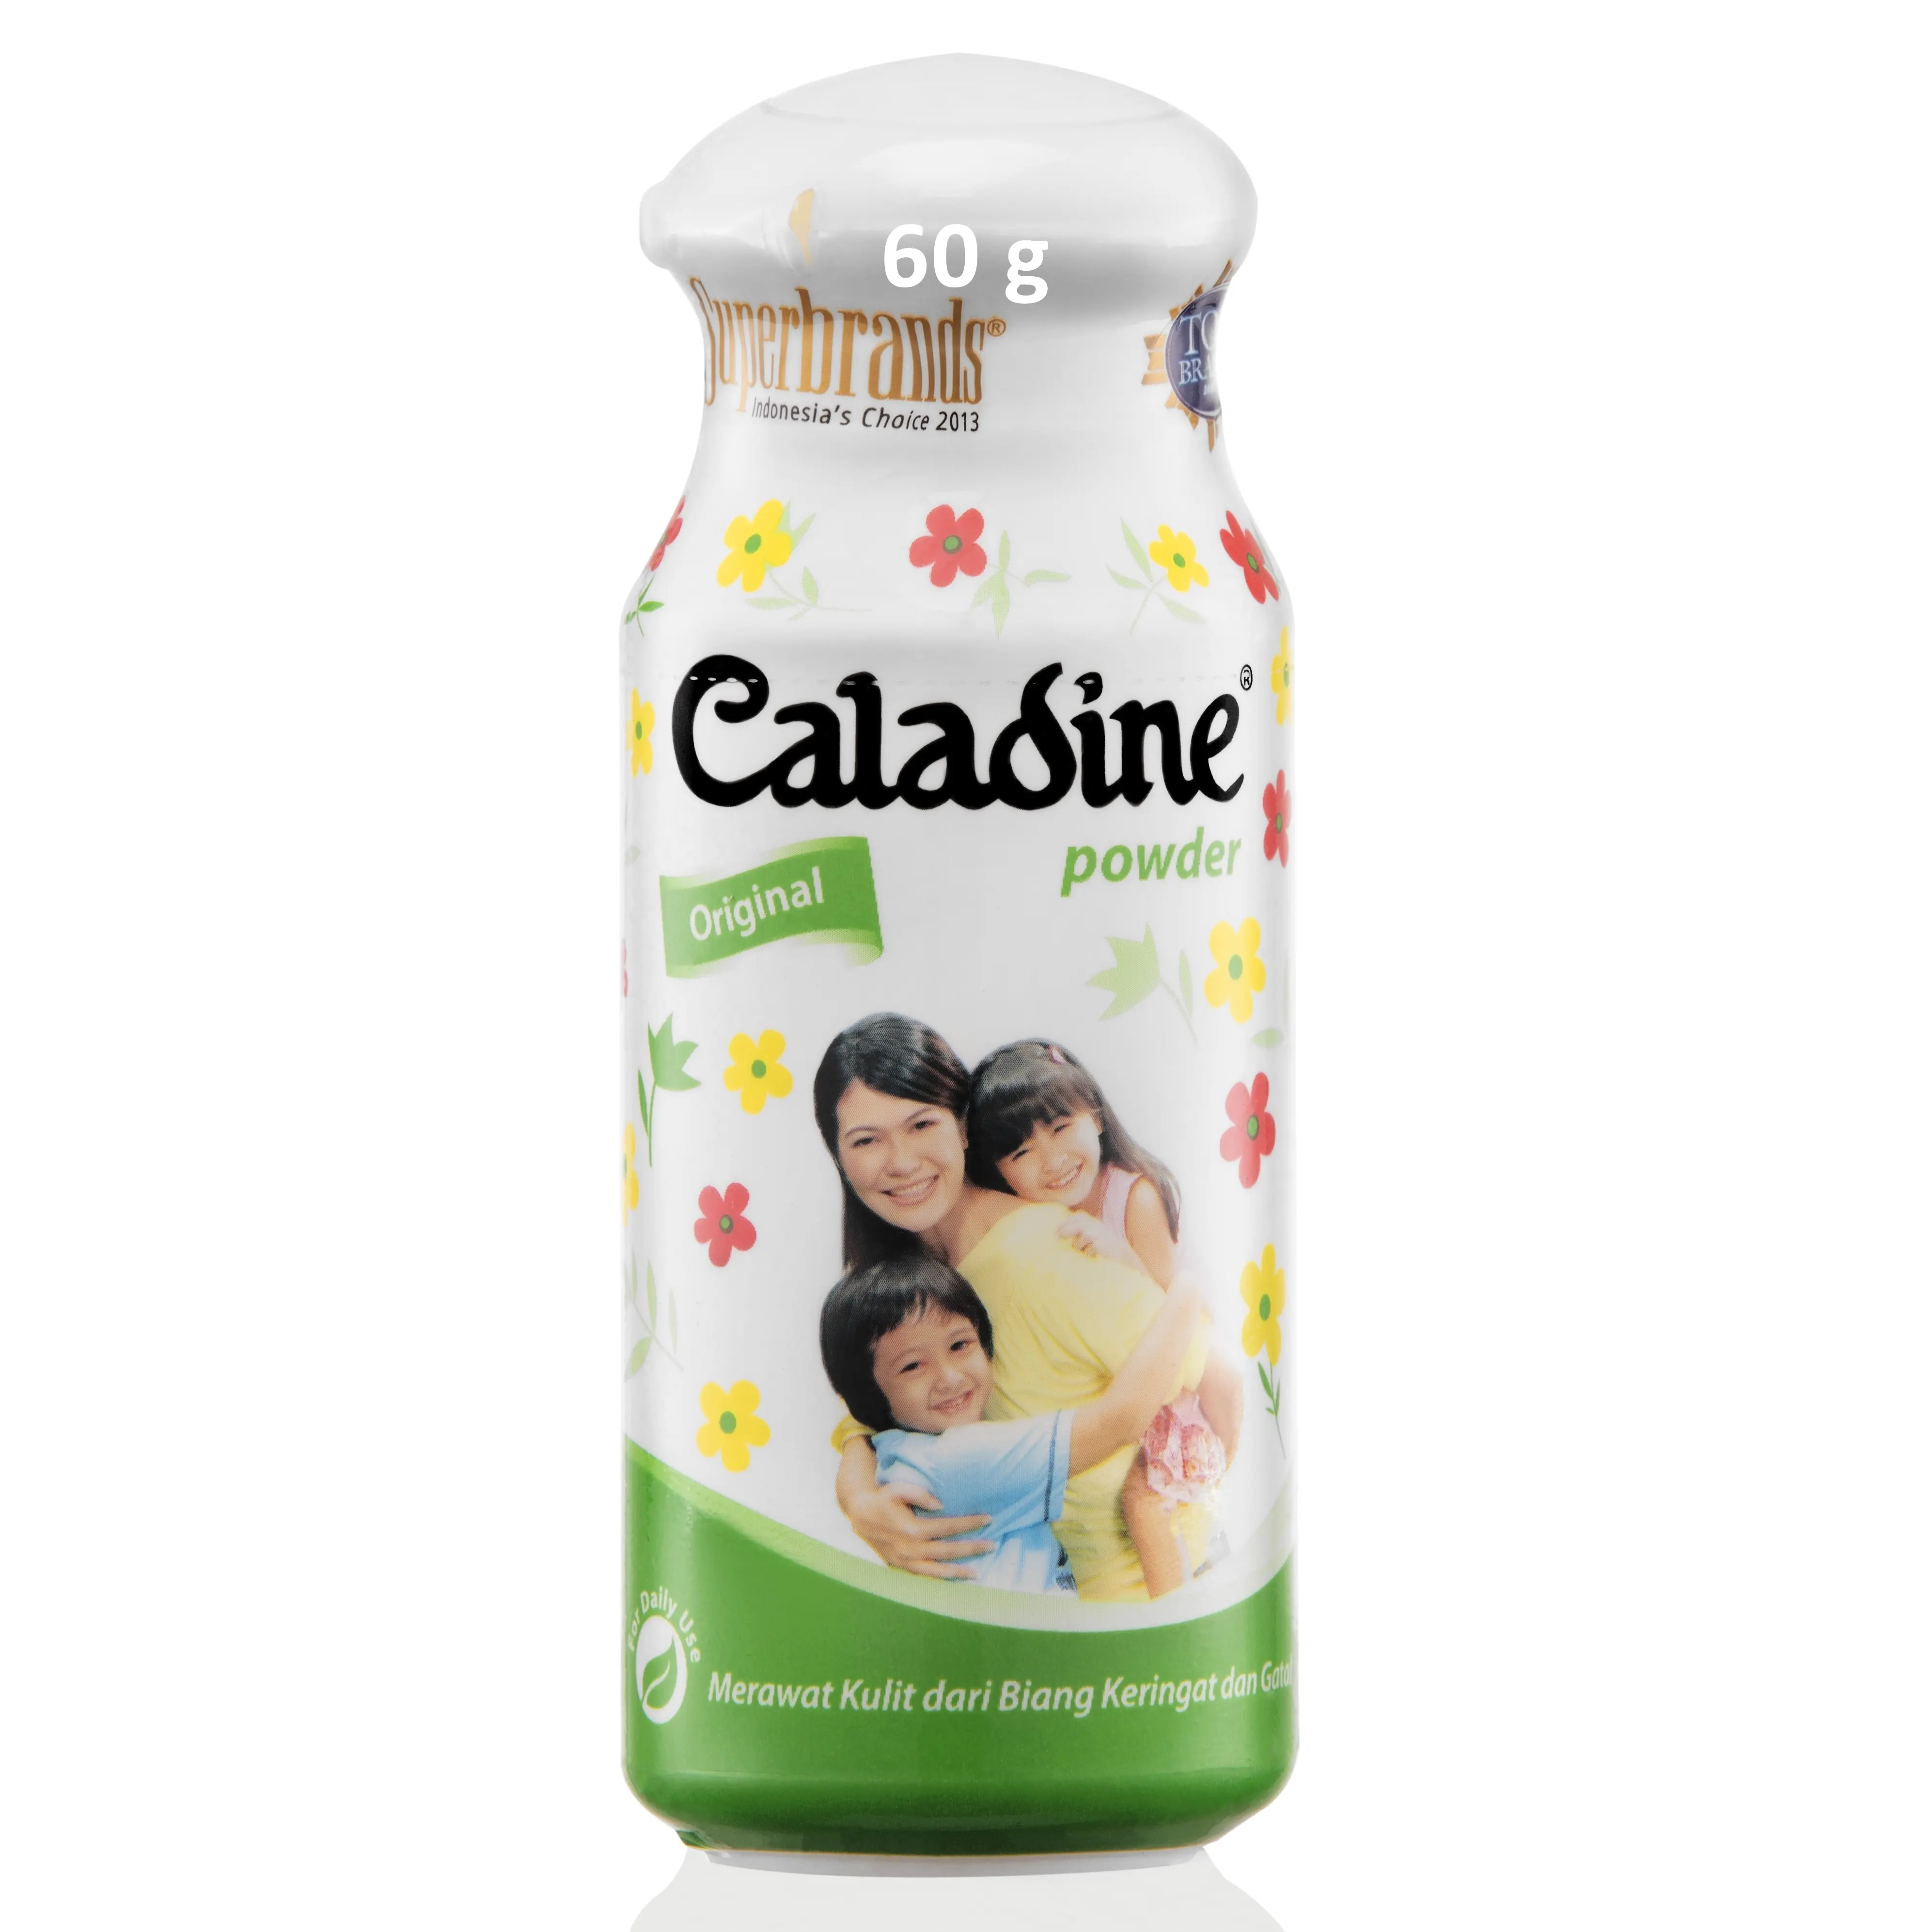 Caladine Powder Original de primera calidad 60 gramos para prevenir y proteger la piel de la picazón debido al calor espinoso